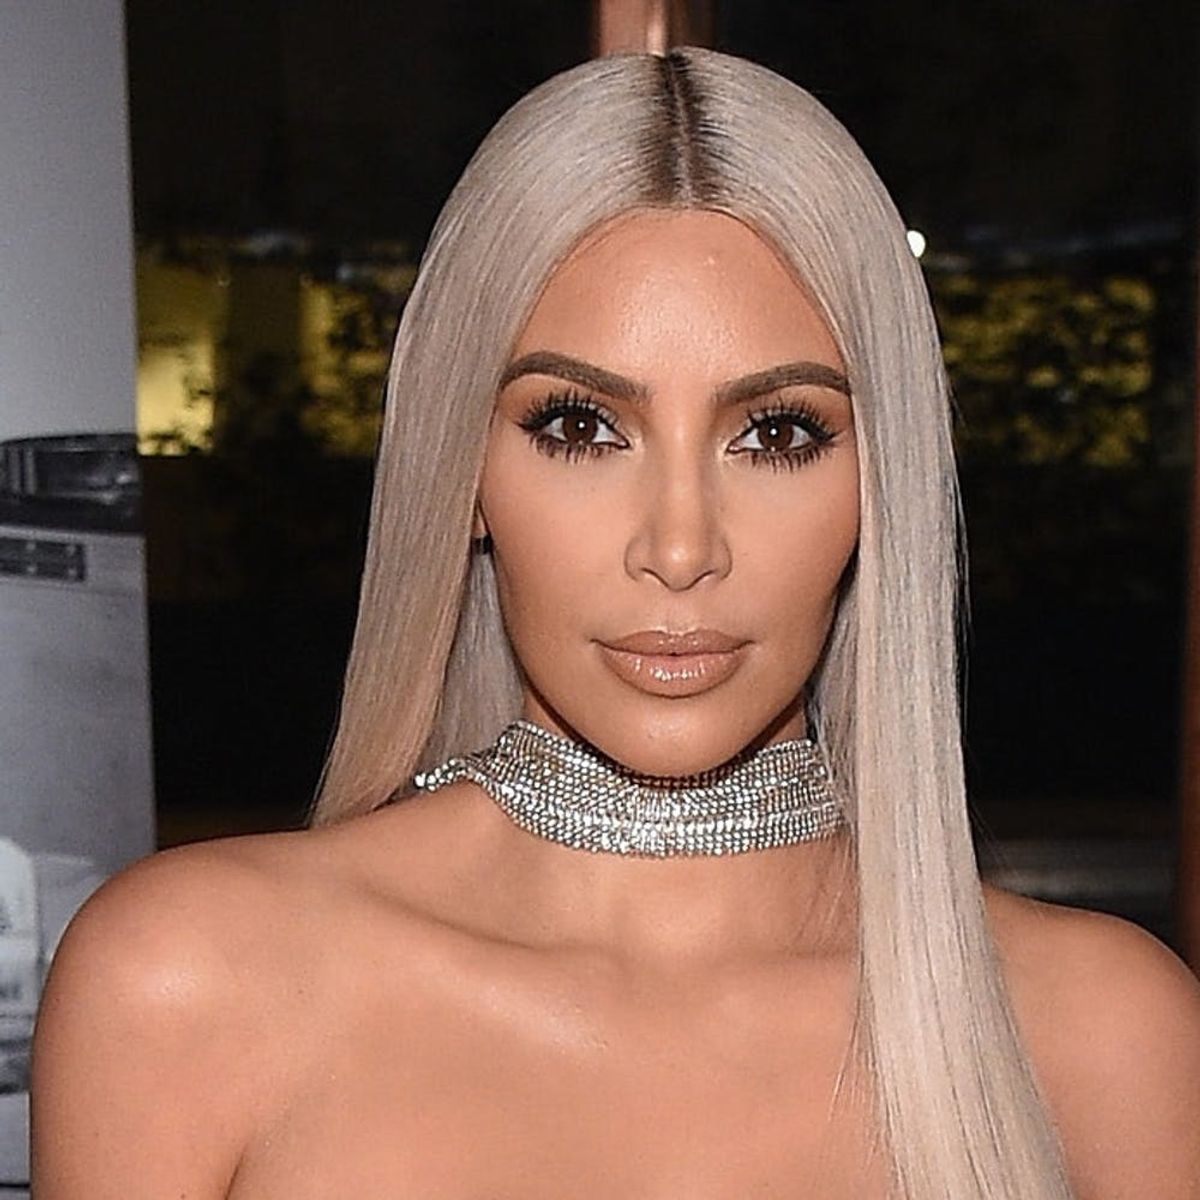 Kim Kardashian West Wore Completely See-Through Pants to NYFW